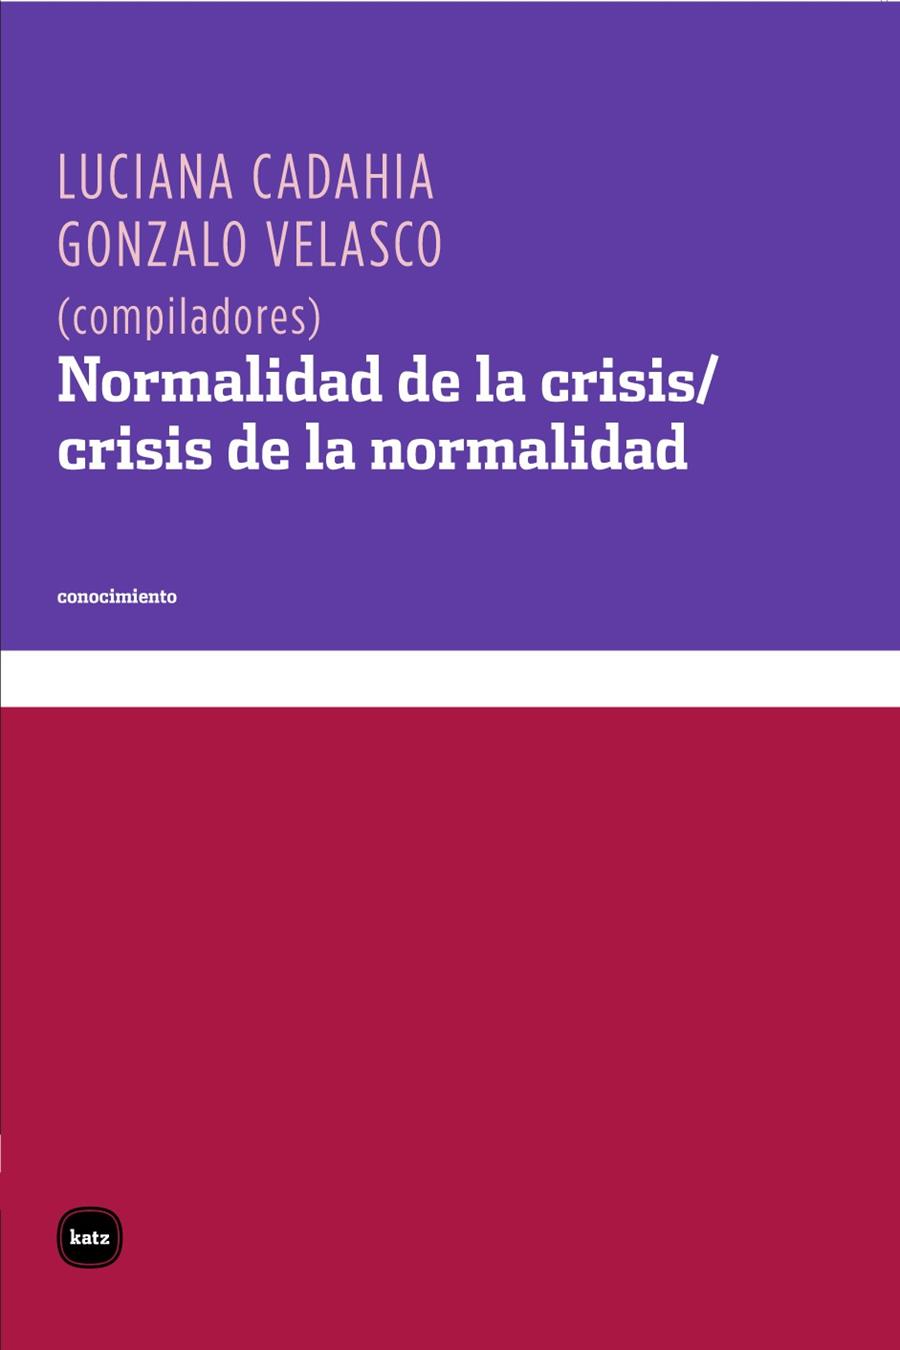 Normalidad de la crisis / crisis de la normalidad | Luciana Cadahia, Gonzalo Velasco 